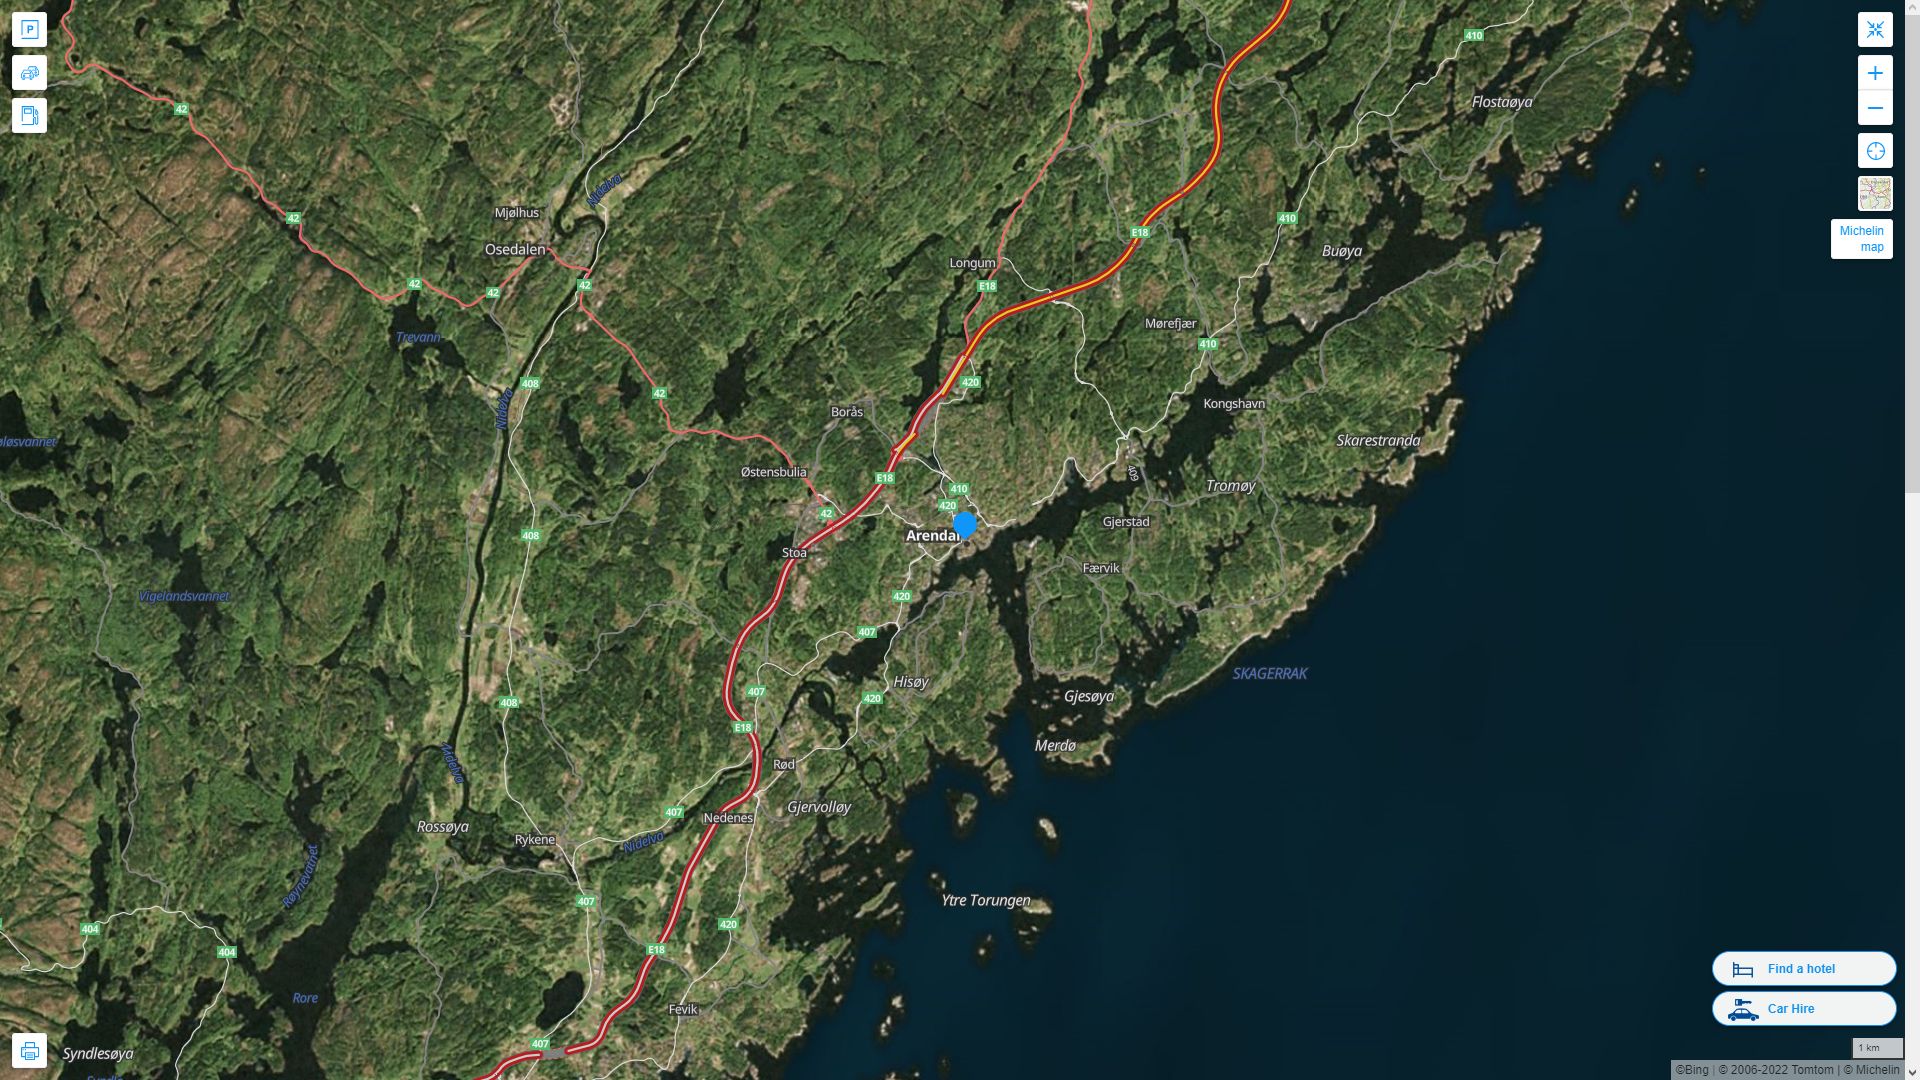 Arendal Norvege Autoroute et carte routiere avec vue satellite